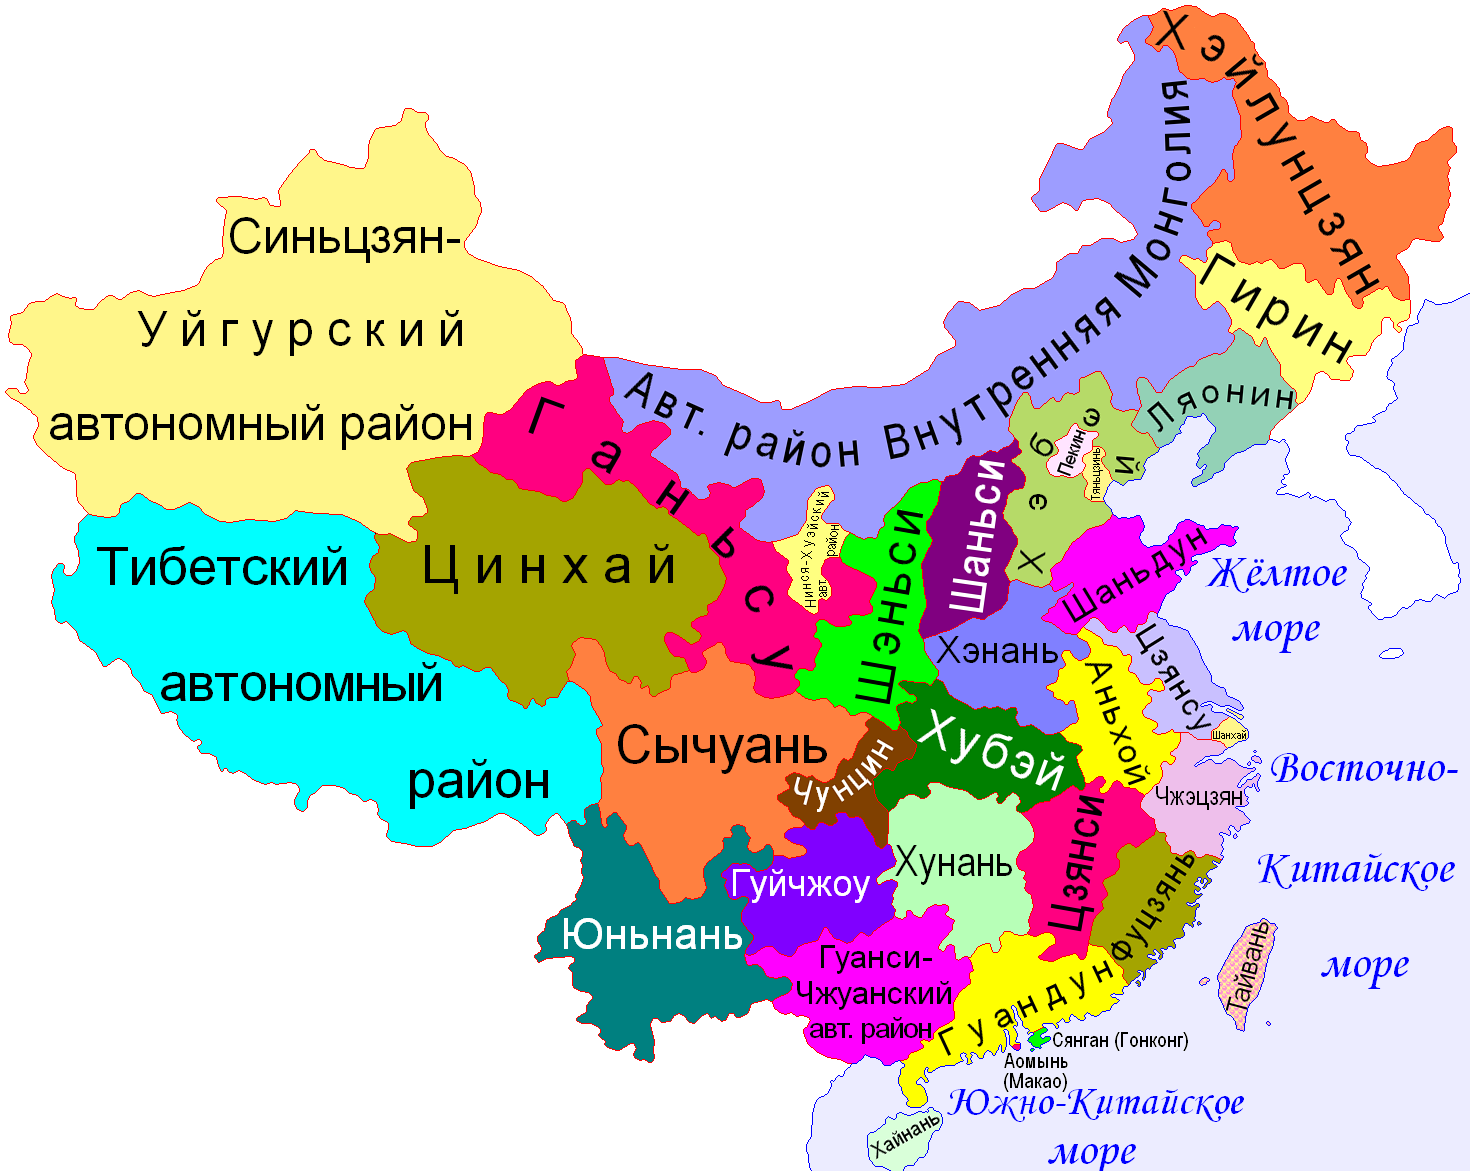 Китайская Народная Республика с автономными округами